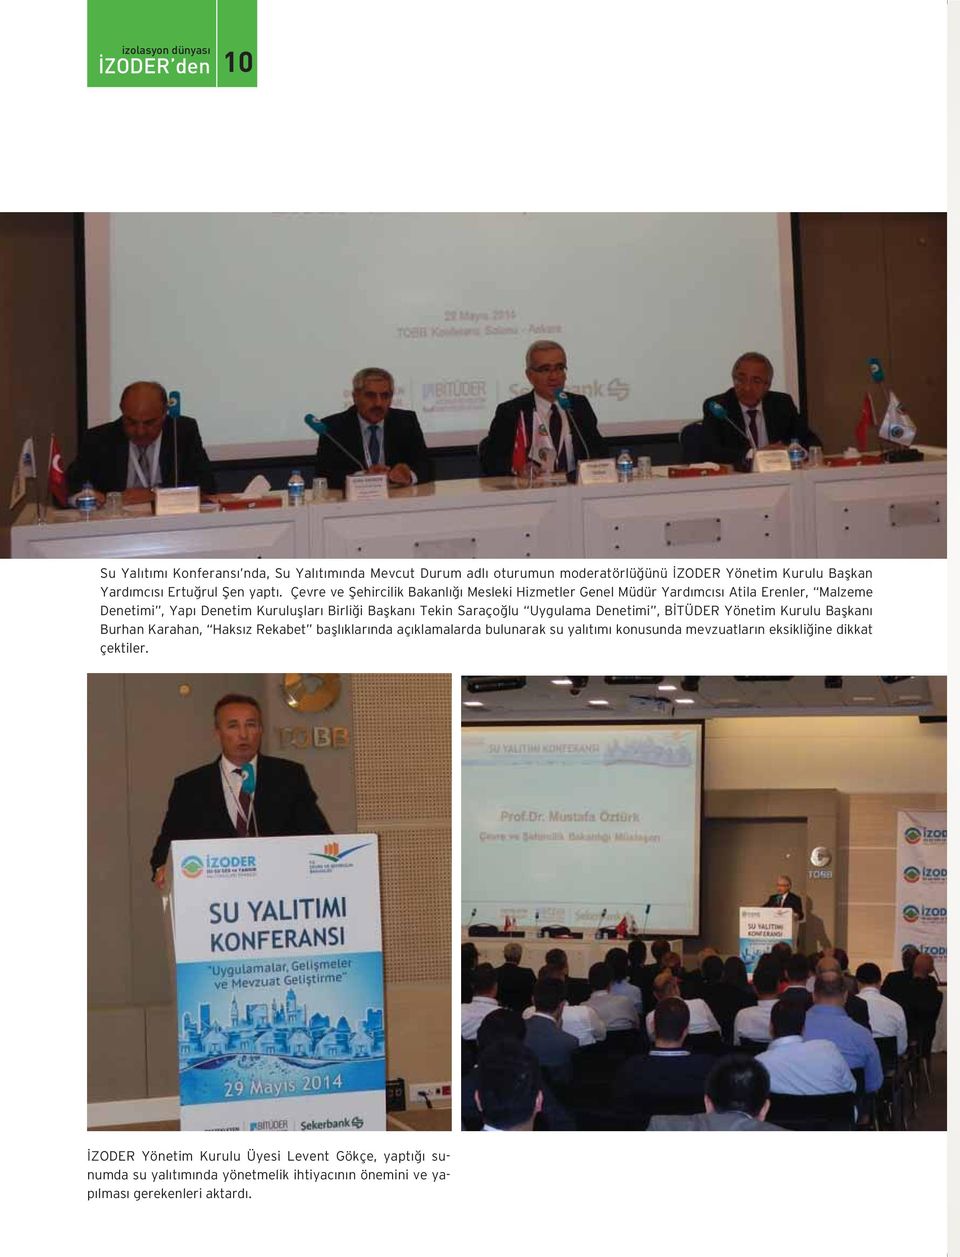 Uygulama Denetimi, BİTÜDER Yönetim Kurulu Başkanı Burhan Karahan, Haksız Rekabet başlıklarında açıklamalarda bulunarak su yalıtımı konusunda mevzuatların